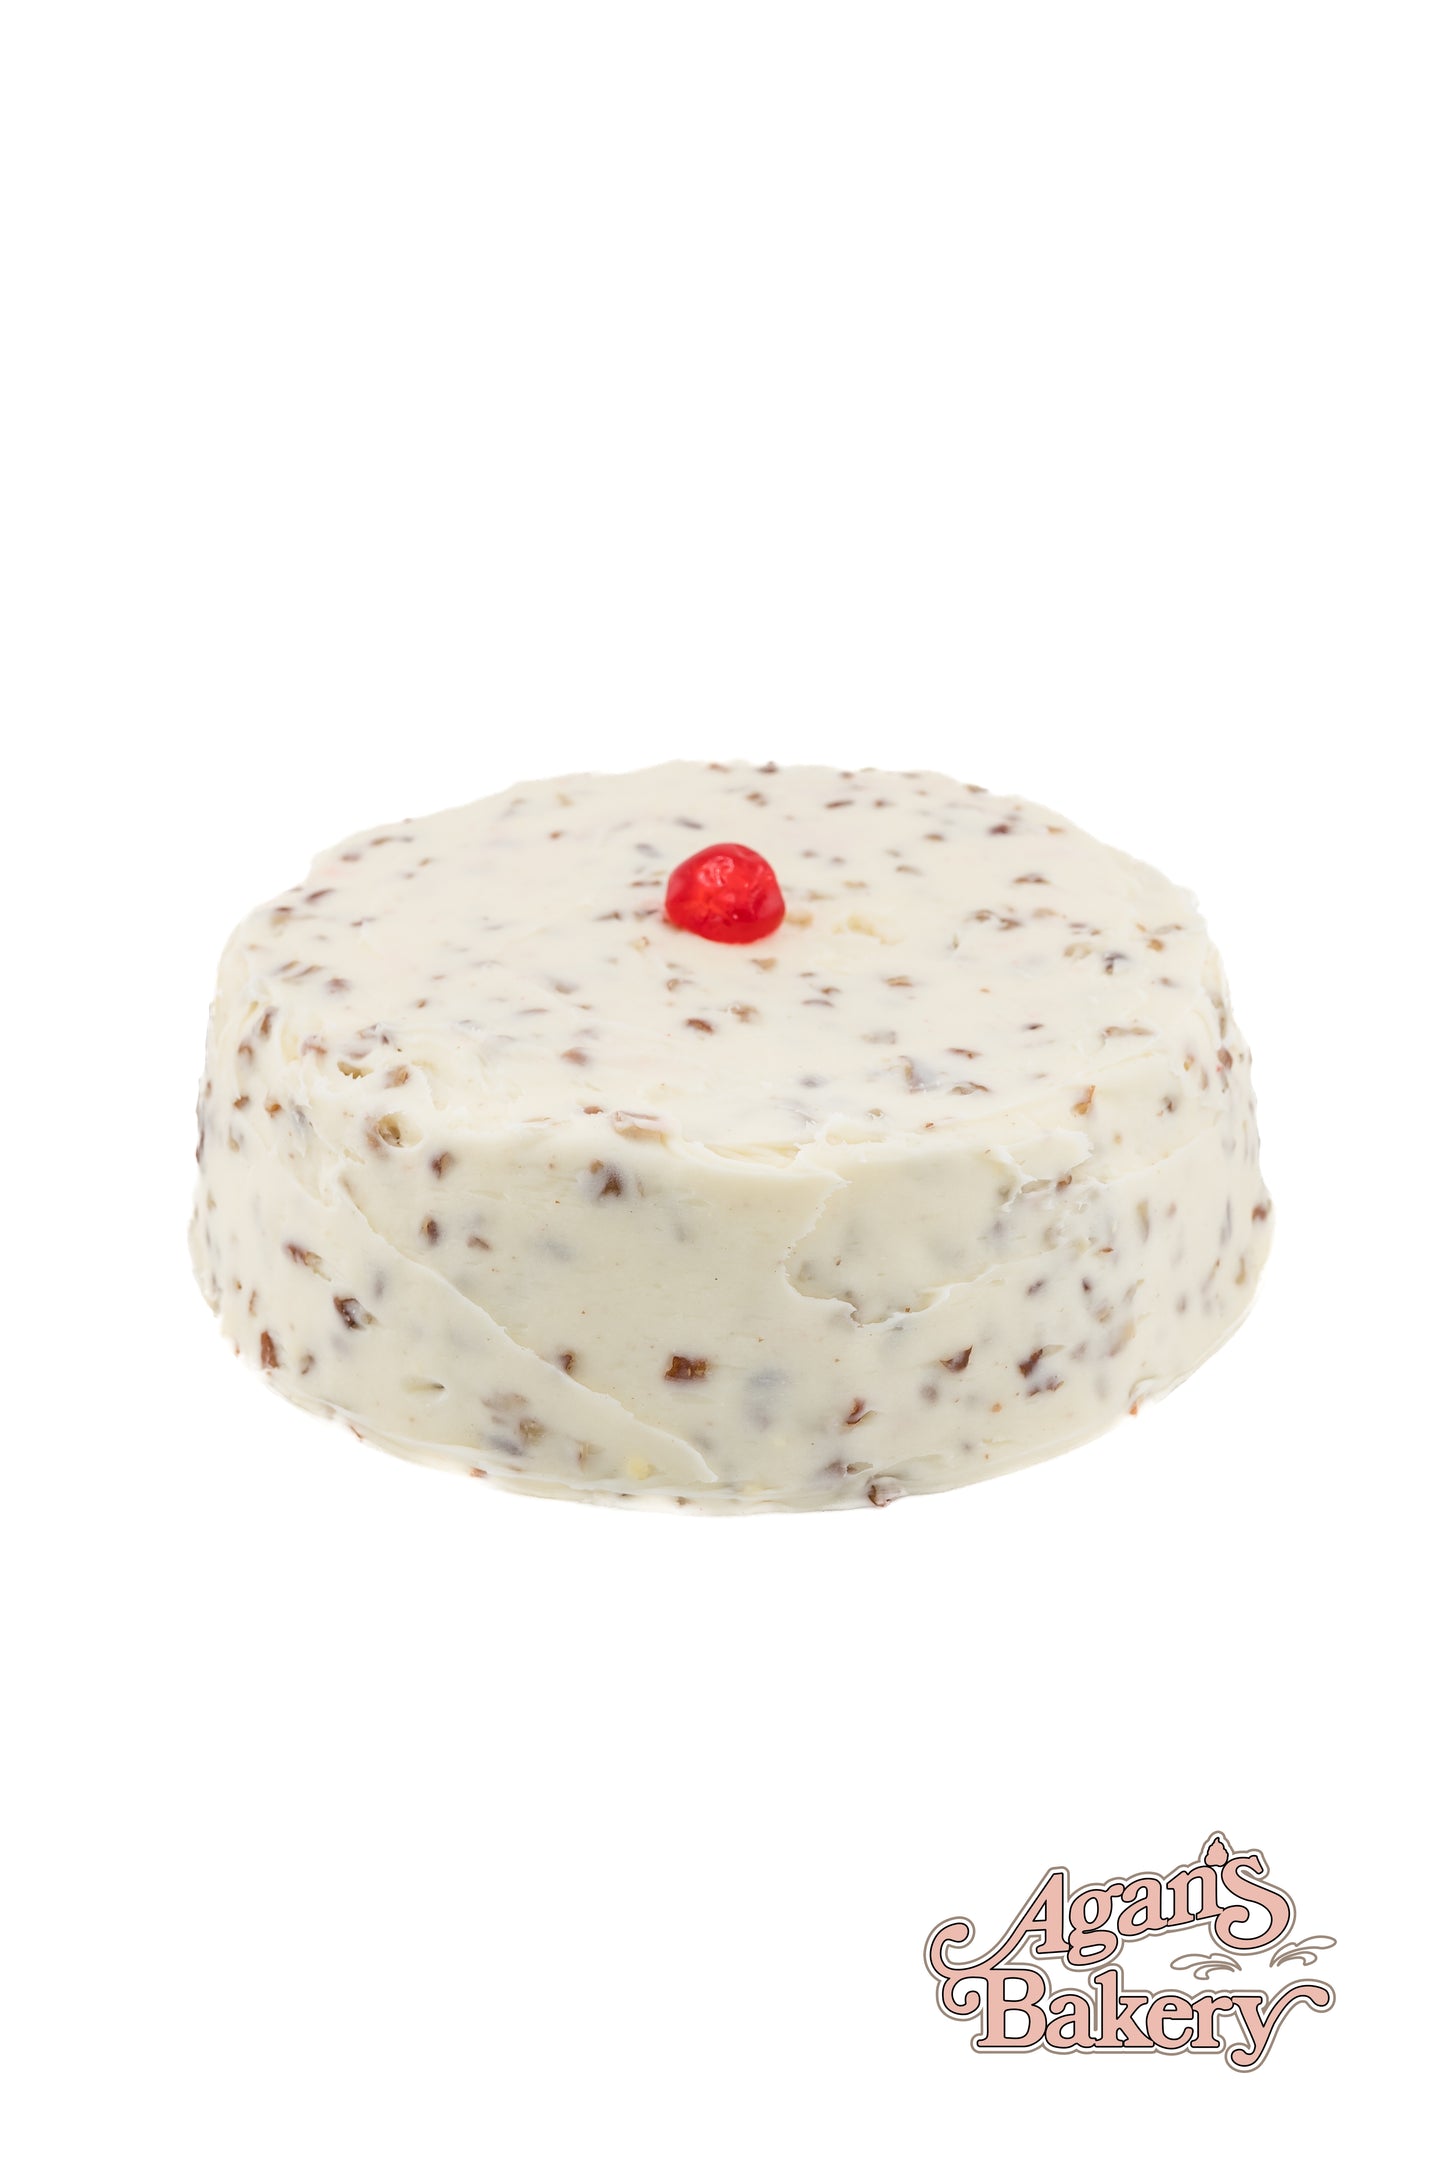 Red Velvet Cake (Single Layer)